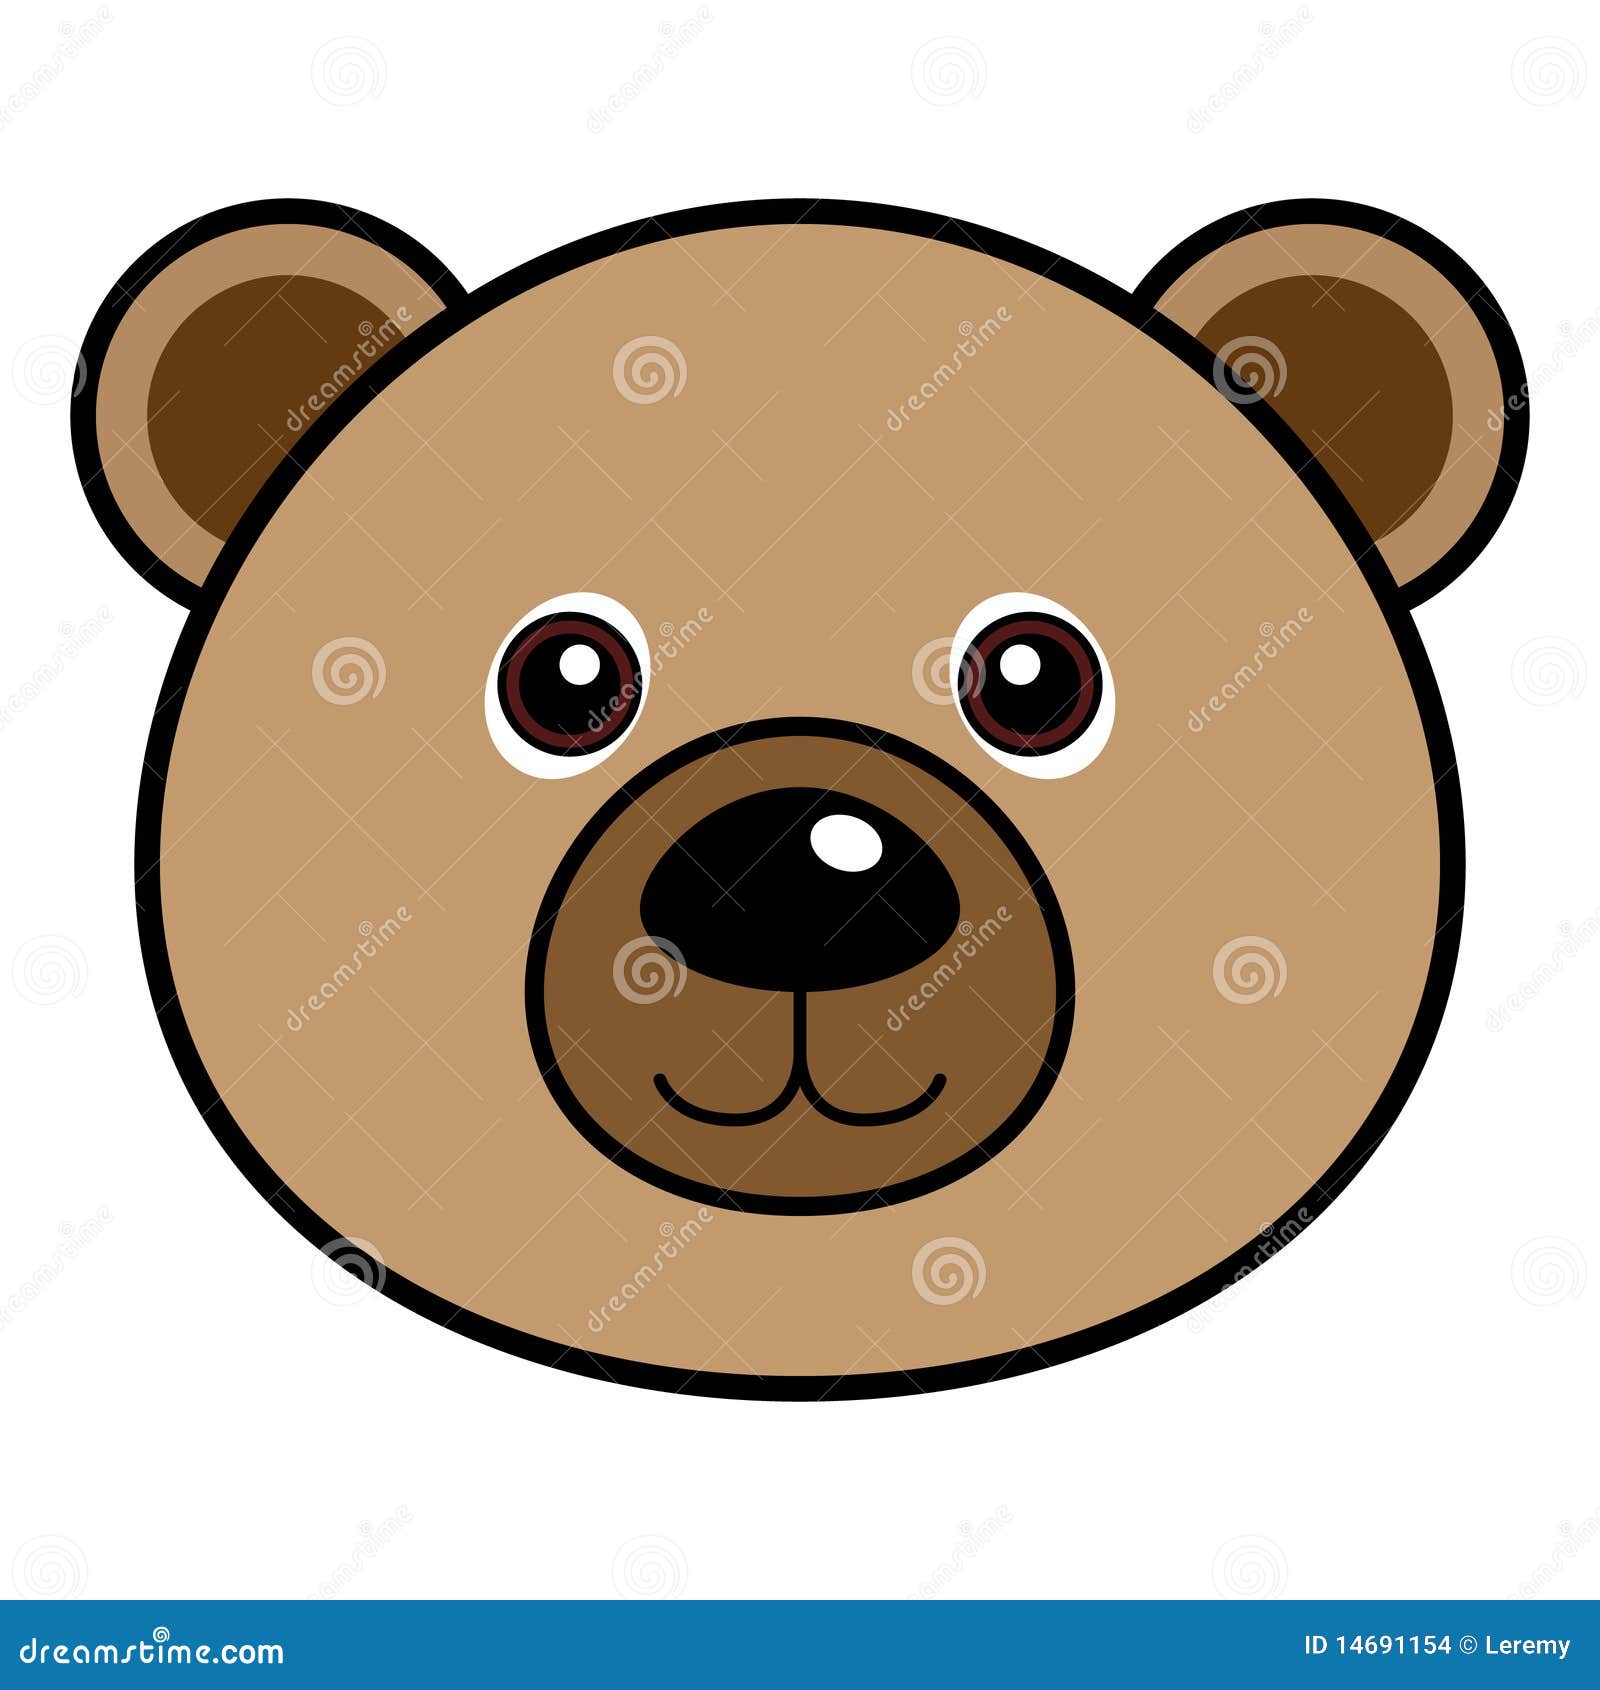 teddy bear face clip art - photo #14